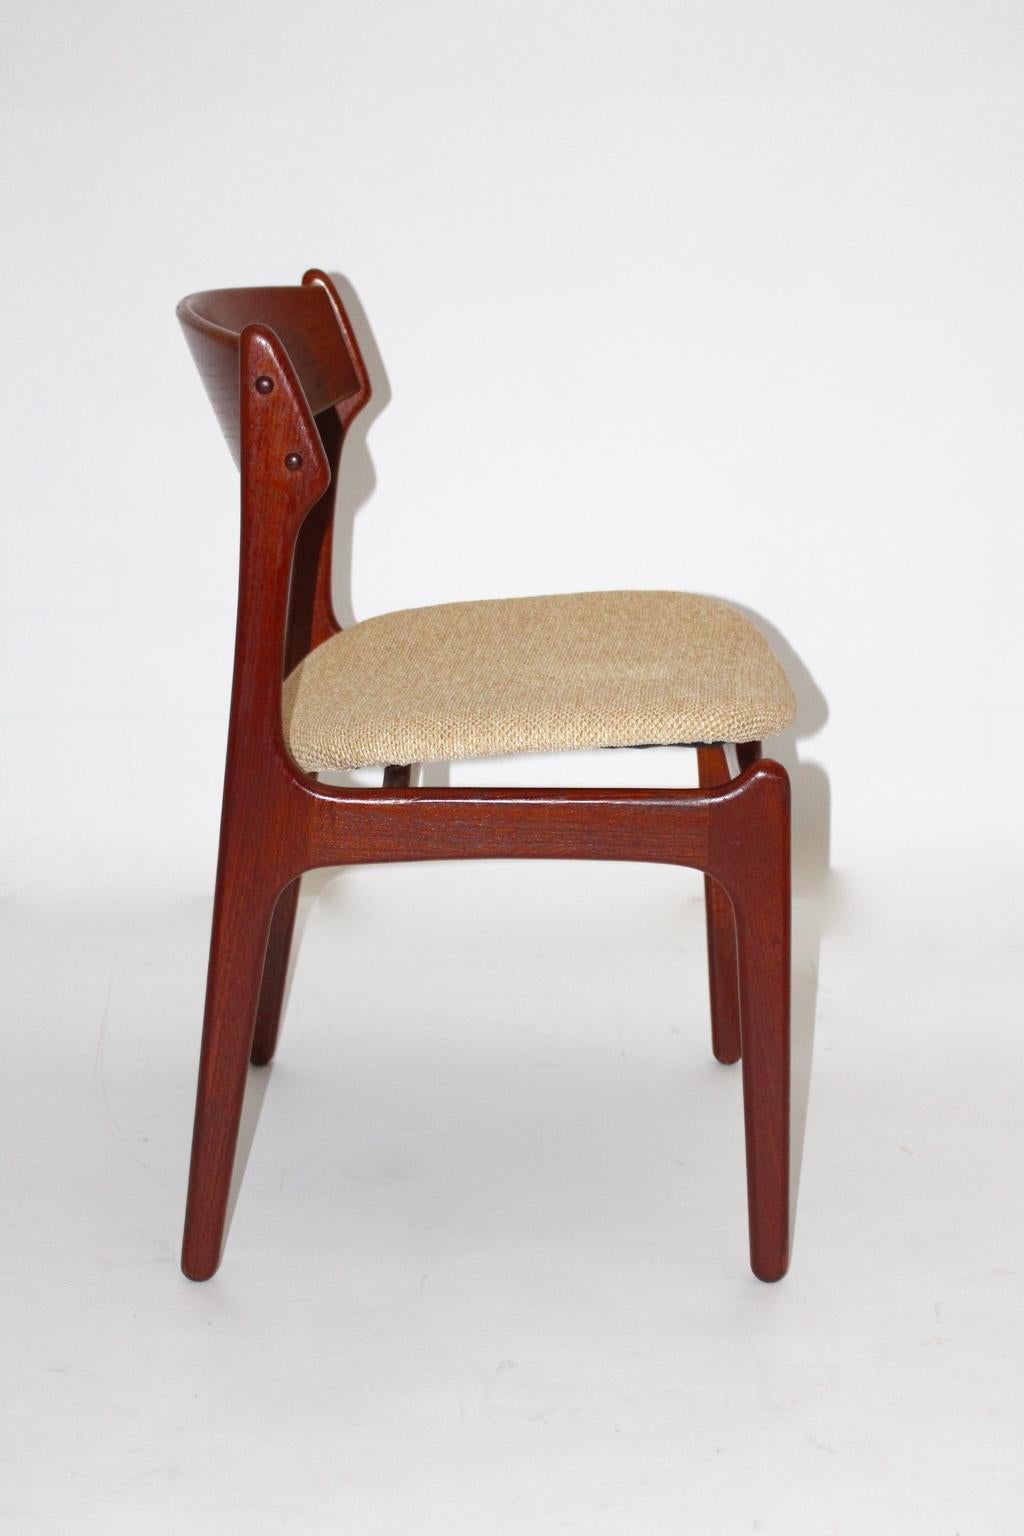 The Modern Scandinavian Organic six (6) chaises ou fauteuils de salle à manger par Erik Buch pour O.D.Mobler 1960s Danemark.
Un grand ensemble de six chaises de salle à manger en teck avec un nouveau siège recouvert de tissu en laine.
Ces chaises de